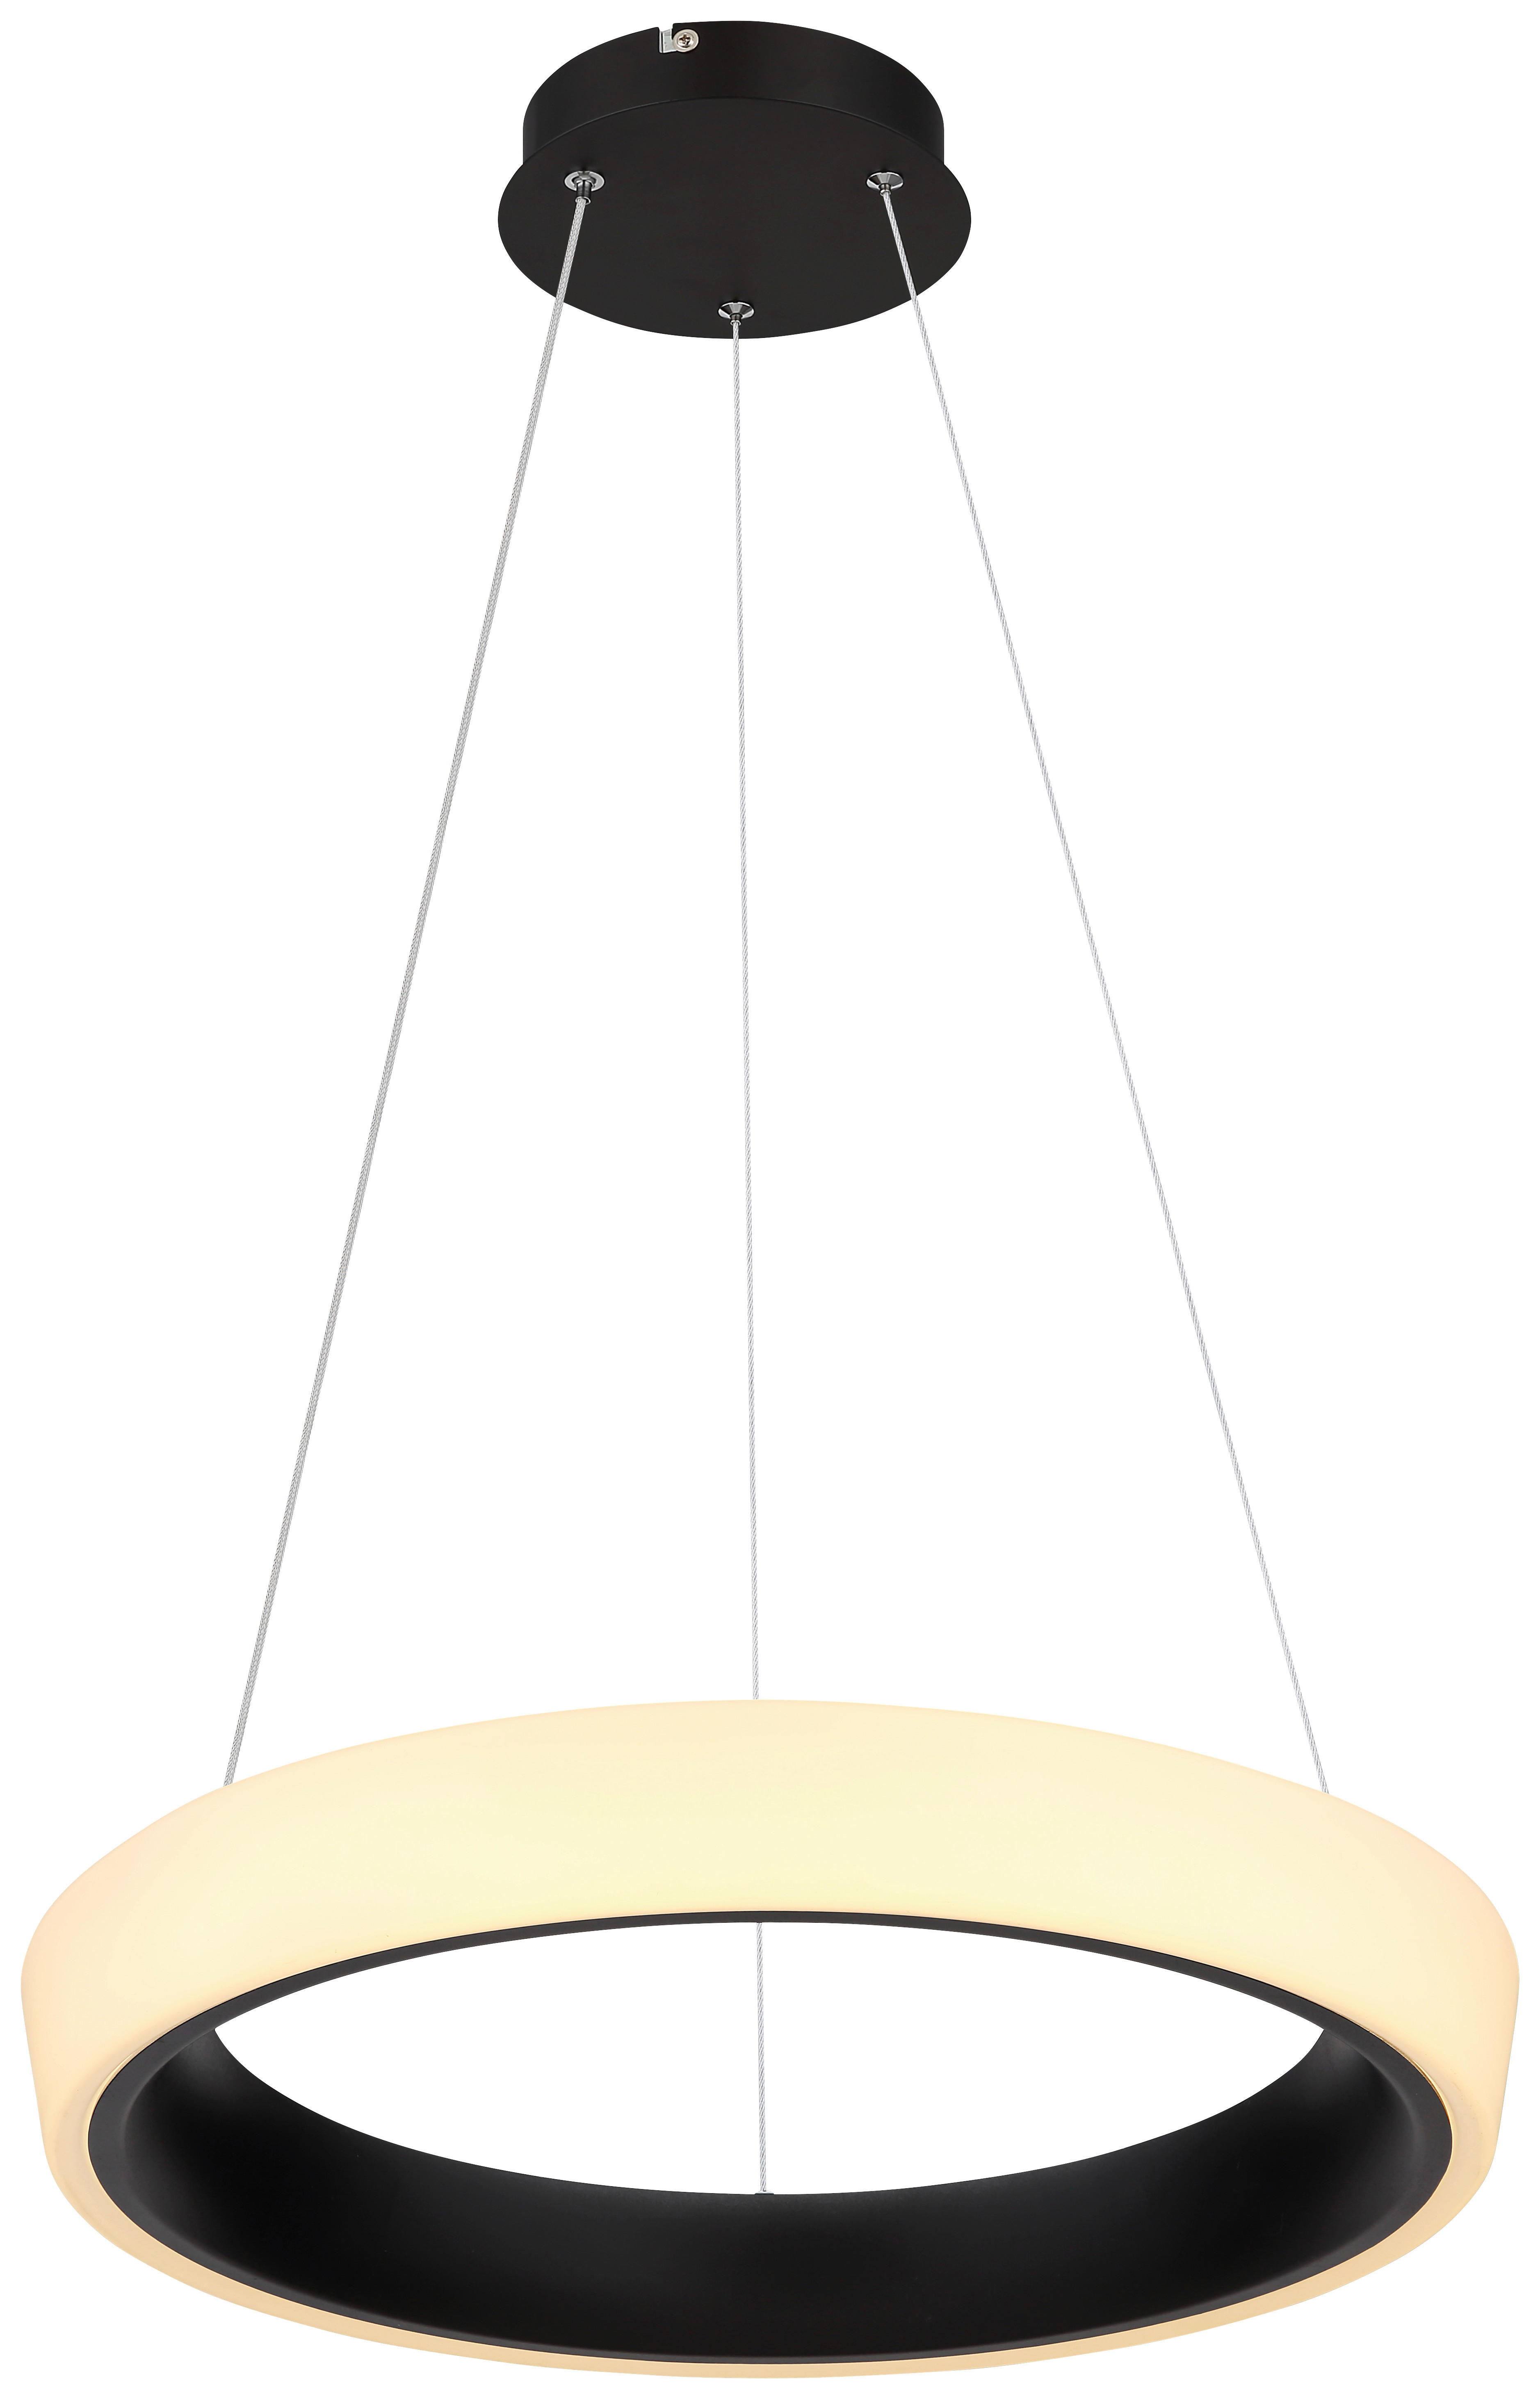 LED-HÄNGELEUCHTE Tabano 49,5/120 cm   - Opal/Schwarz, Design, Kunststoff/Metall (49,5/120cm) - Globo